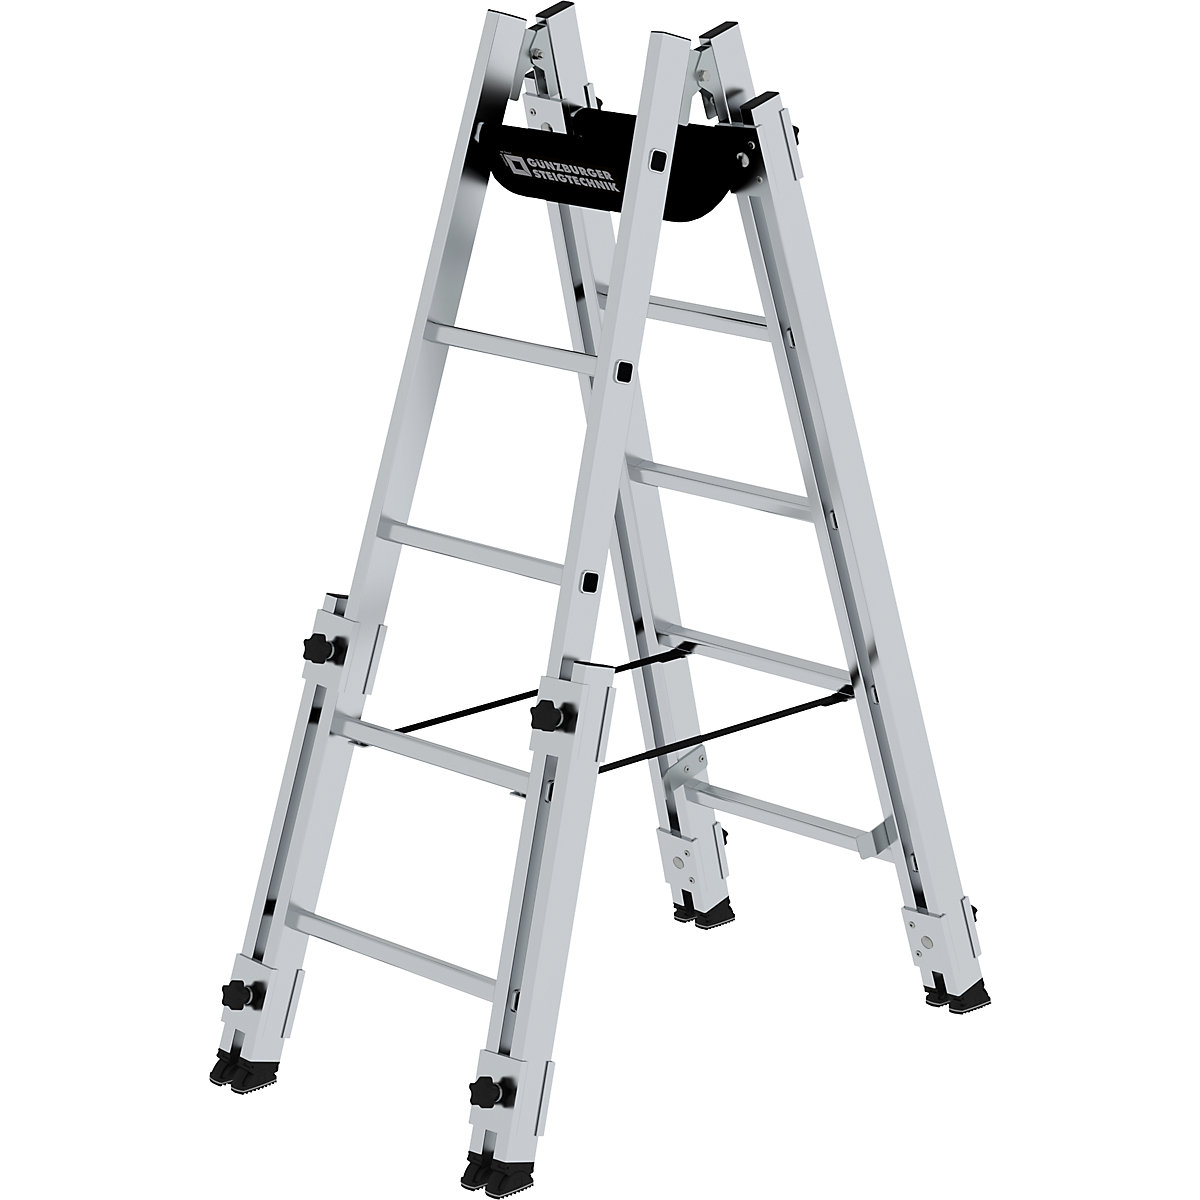 Hliníkový stojaci rebrík s priečľami - MUNK